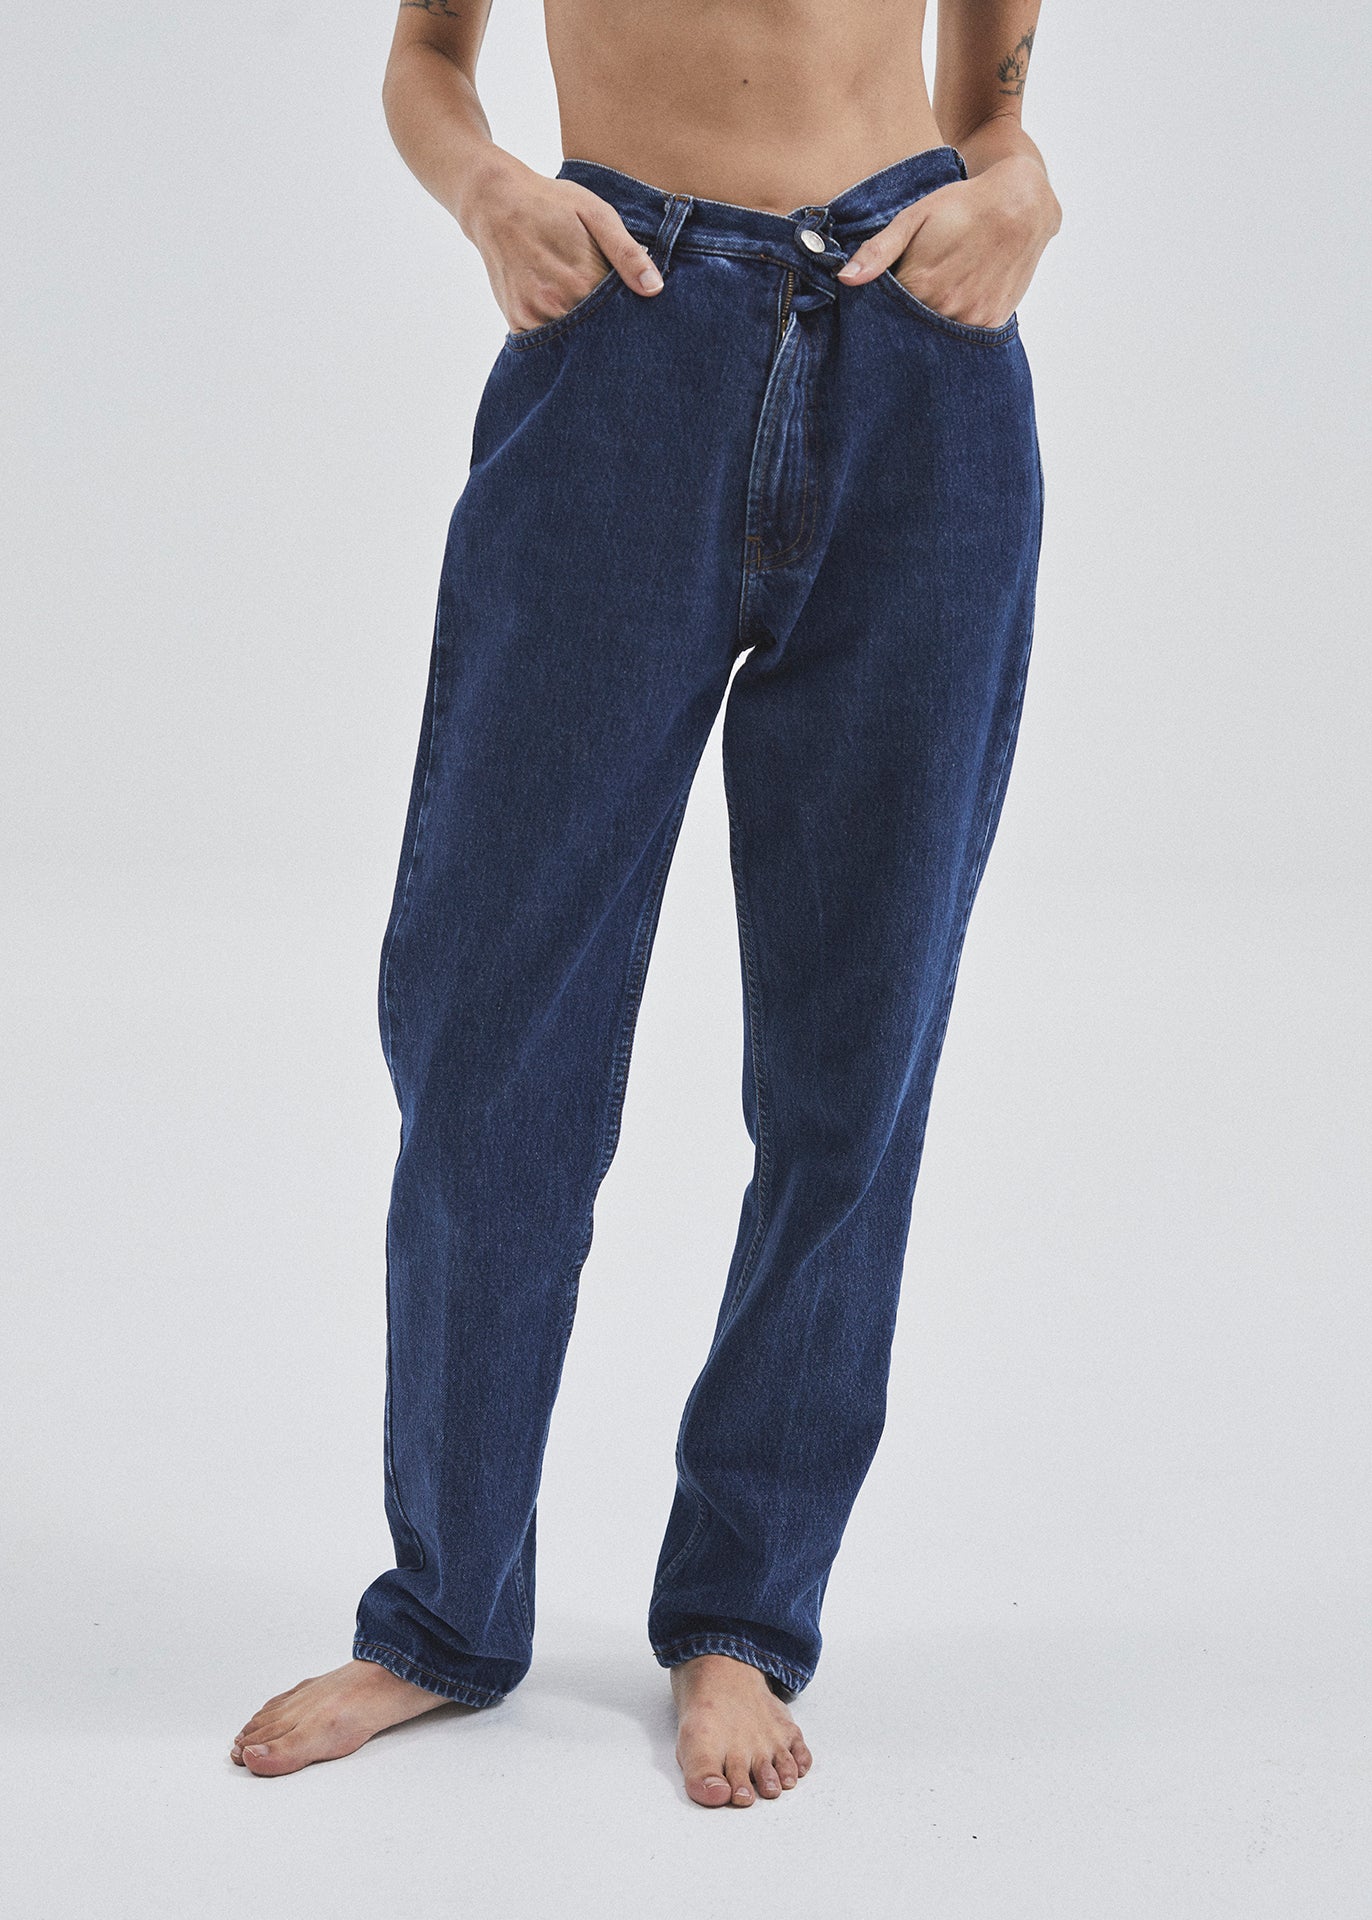 Ralph Lauren jeans - 28